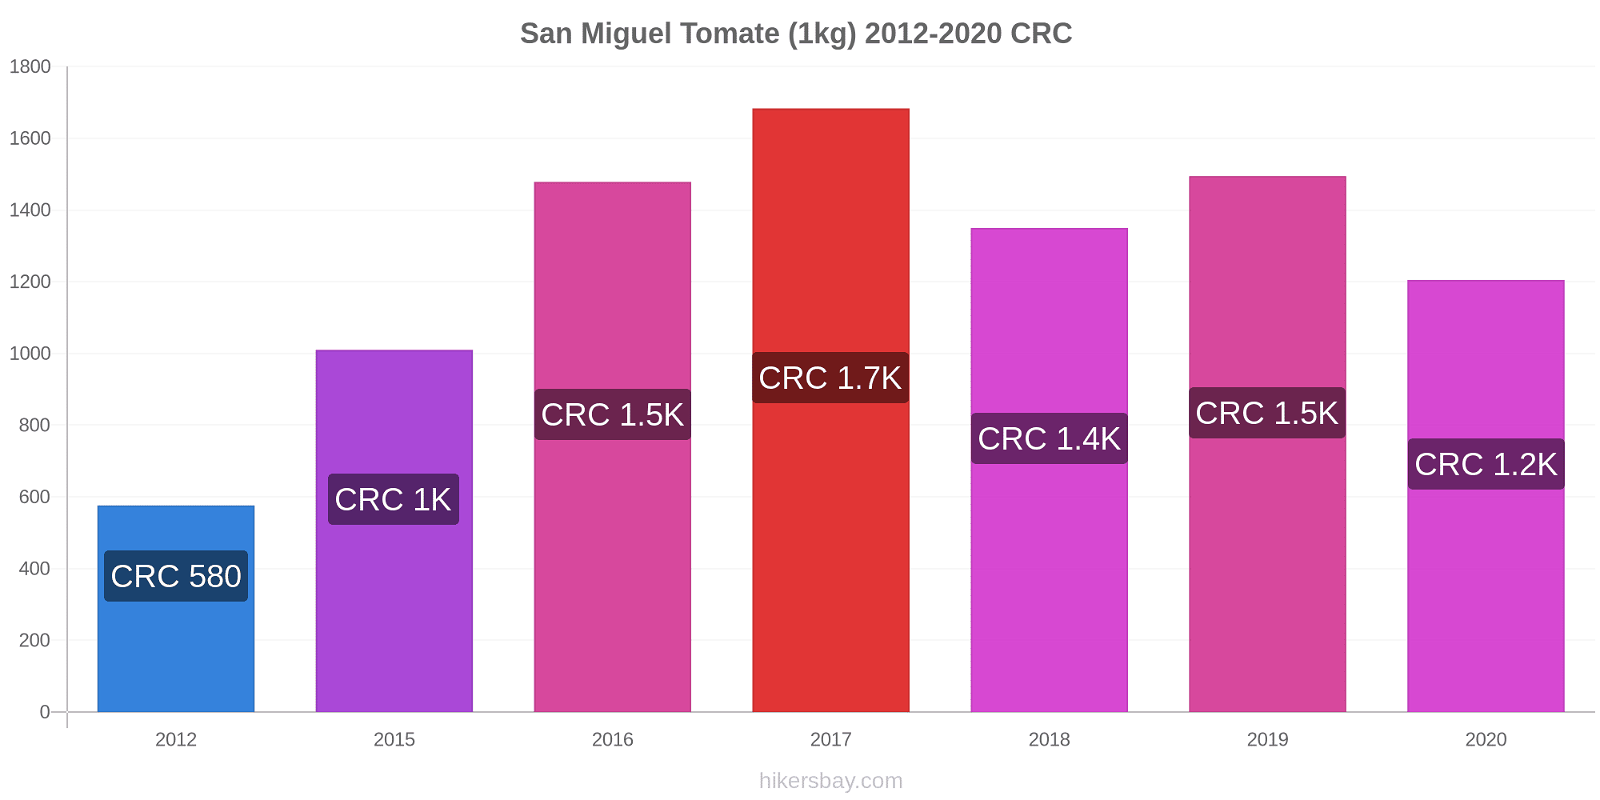 San Miguel cambios de precios Tomate (1kg) hikersbay.com